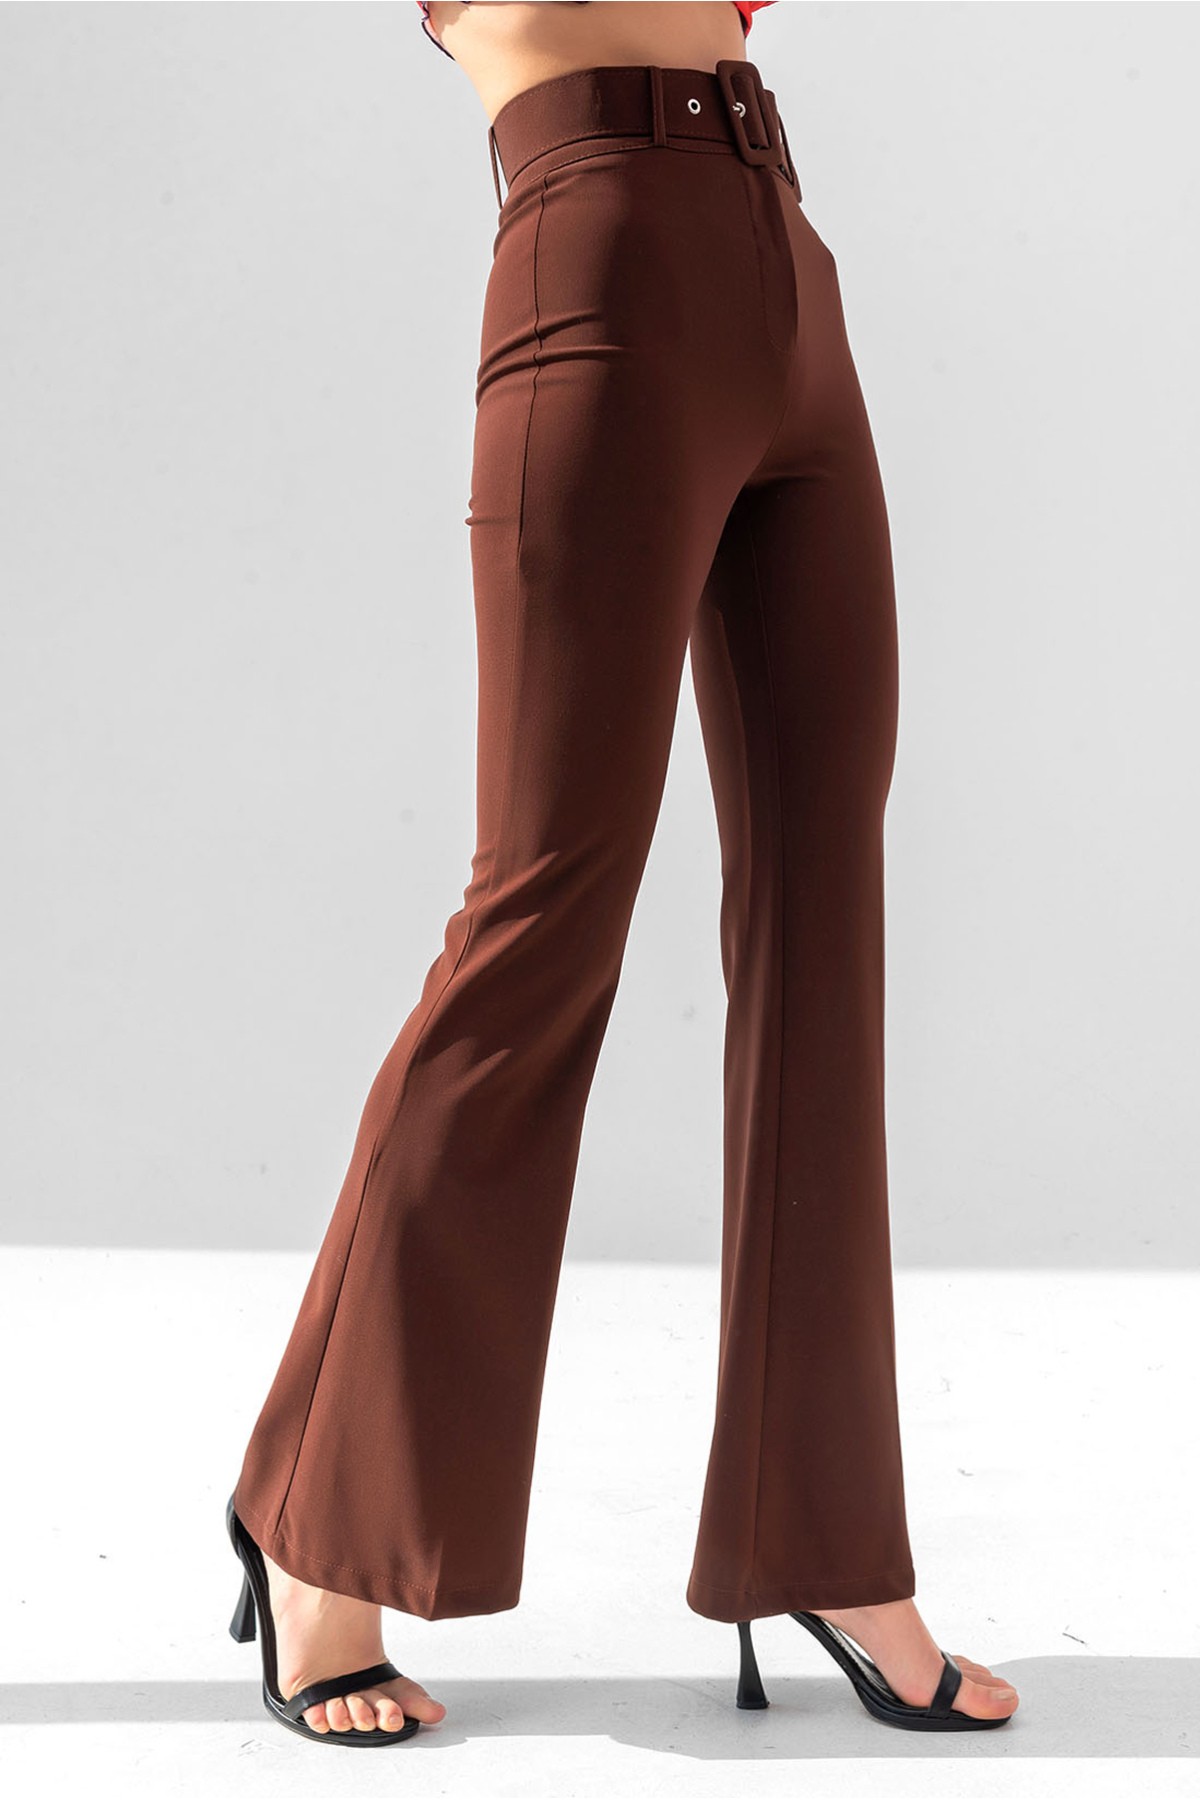 Damen Hose mit hoher Taille und spanischem Schnitt mit Gürtel - Erdfarbe